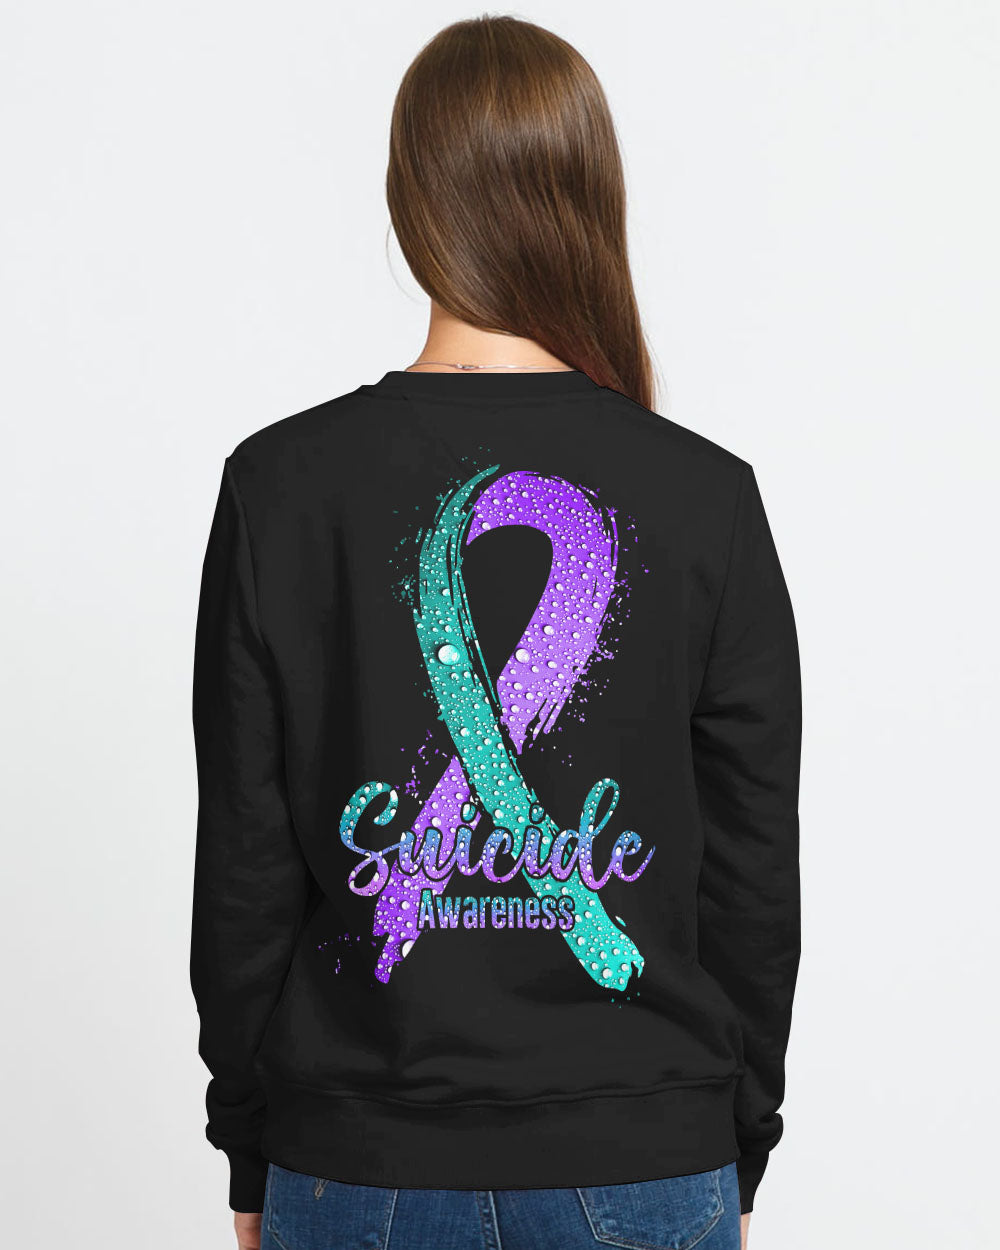 Water Drop Ribbon Women's Suicide Prevention Awareness Sweatshirt